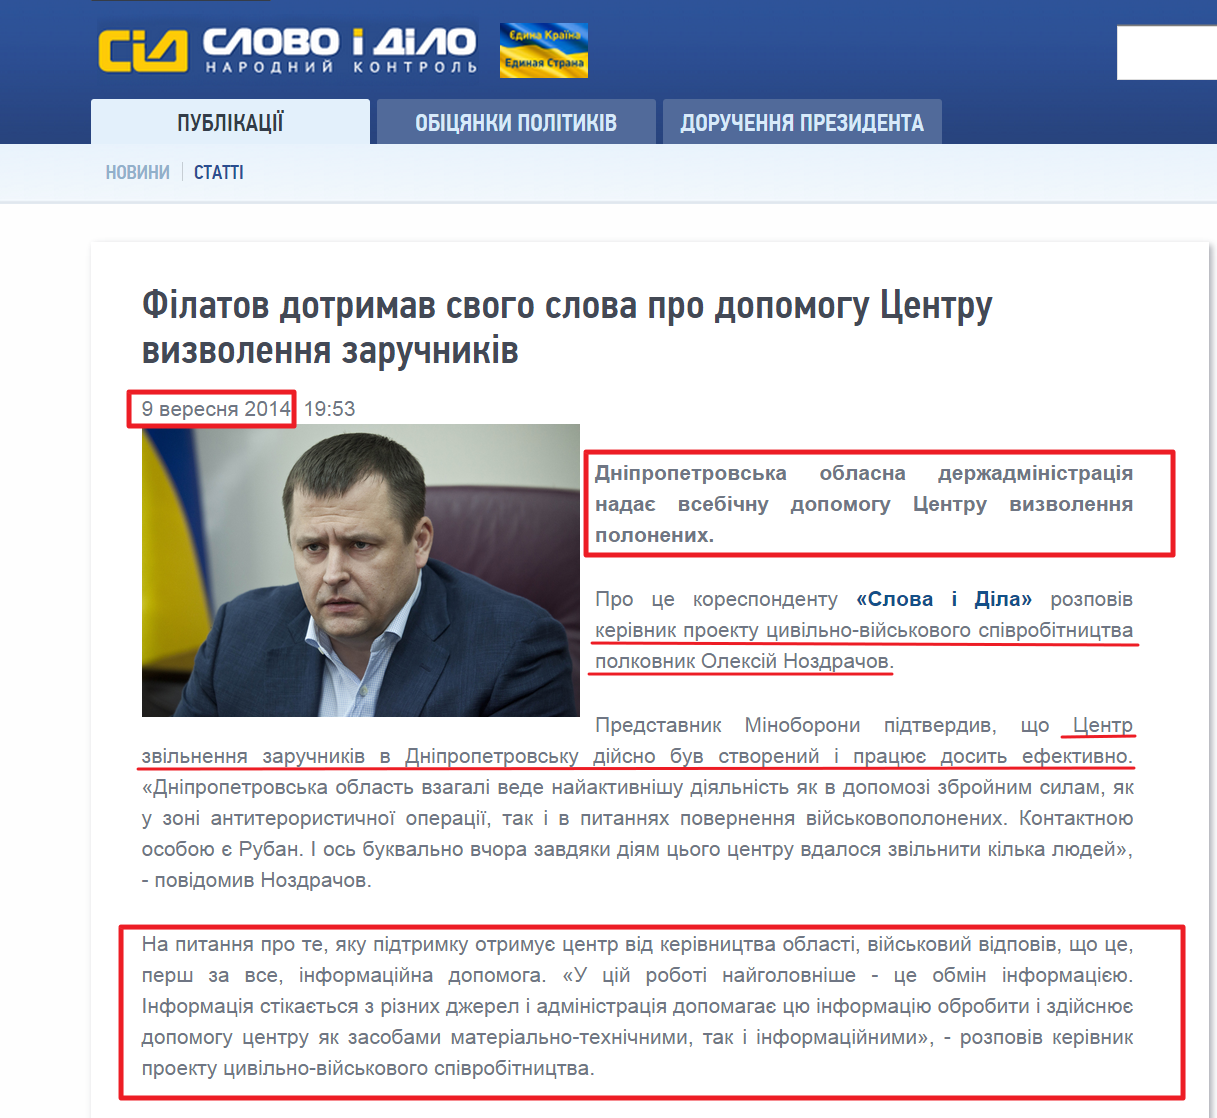 http://www.slovoidilo.ua/news/4690/2014-09-09/filatov-sderzhal-svoe-slovo-o-pomocshi-centru-osvobozhdeniya-zalozhnikov.html